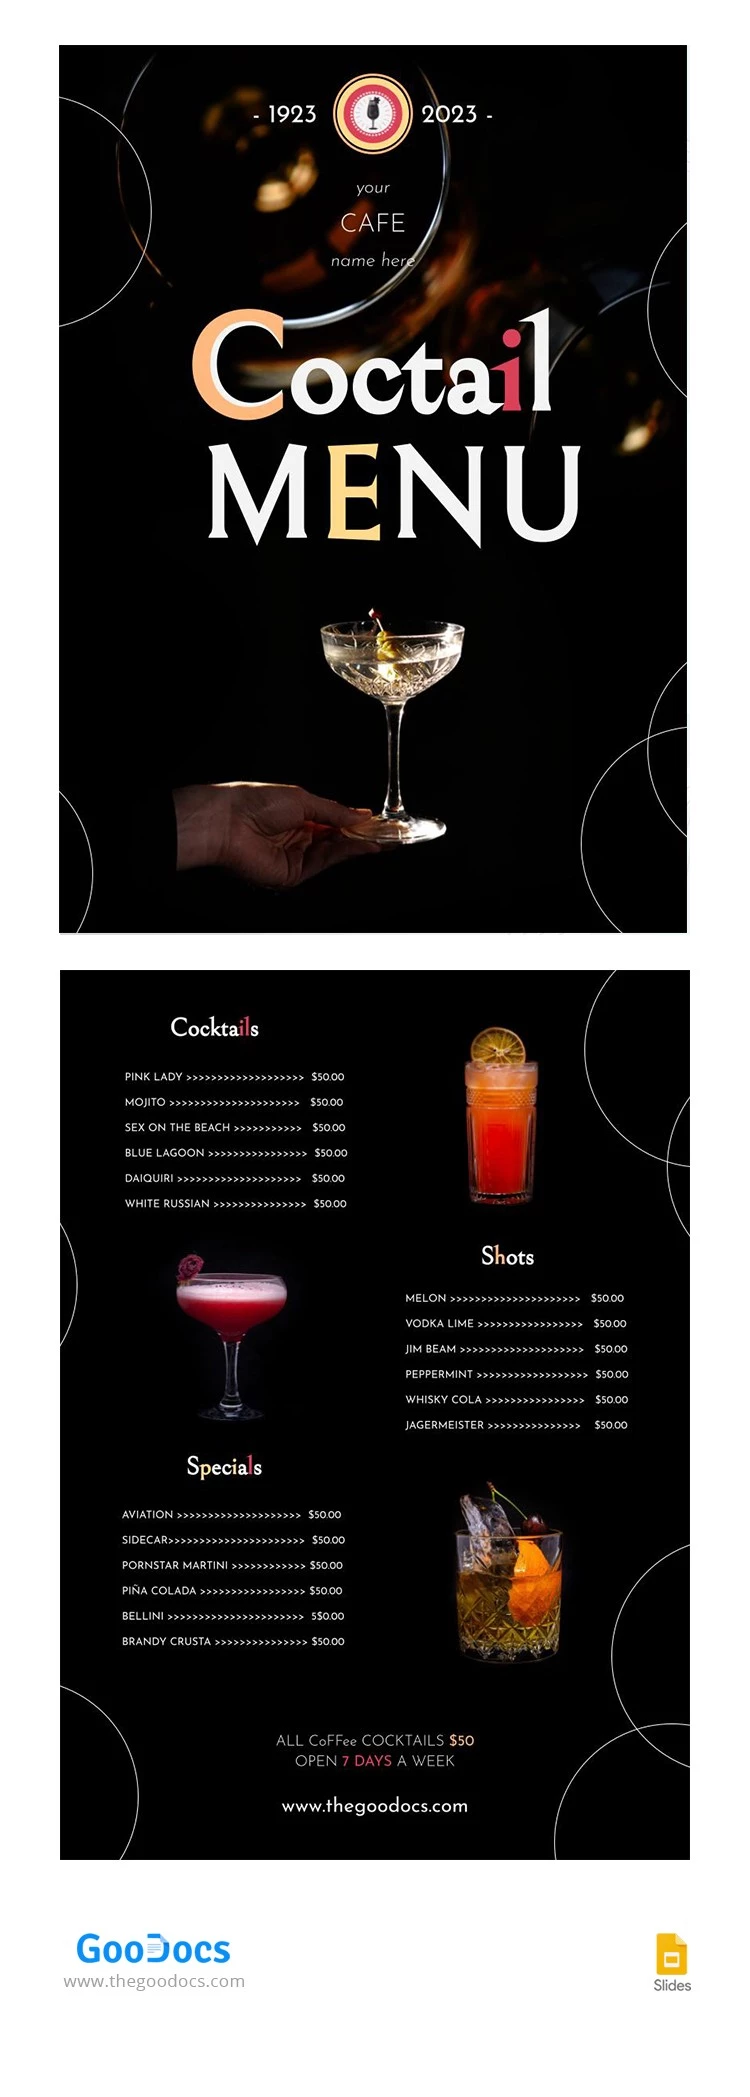 Menu do Restaurante Black Cocktail - free Google Docs Template - 10065912